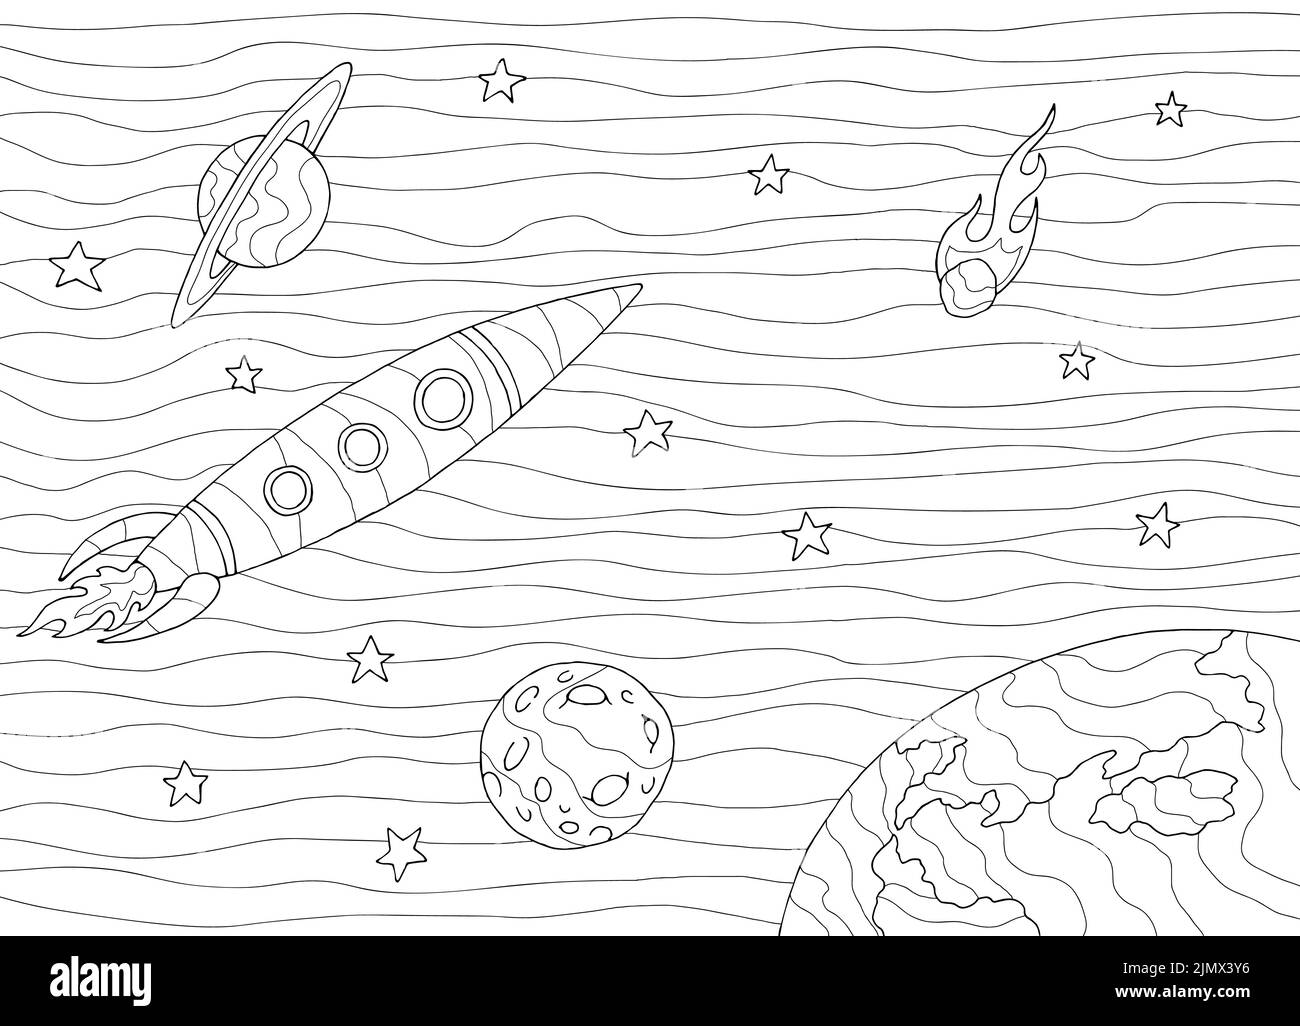 Rocket coloring space graphic black white sketch illustration vettoriale Illustrazione Vettoriale